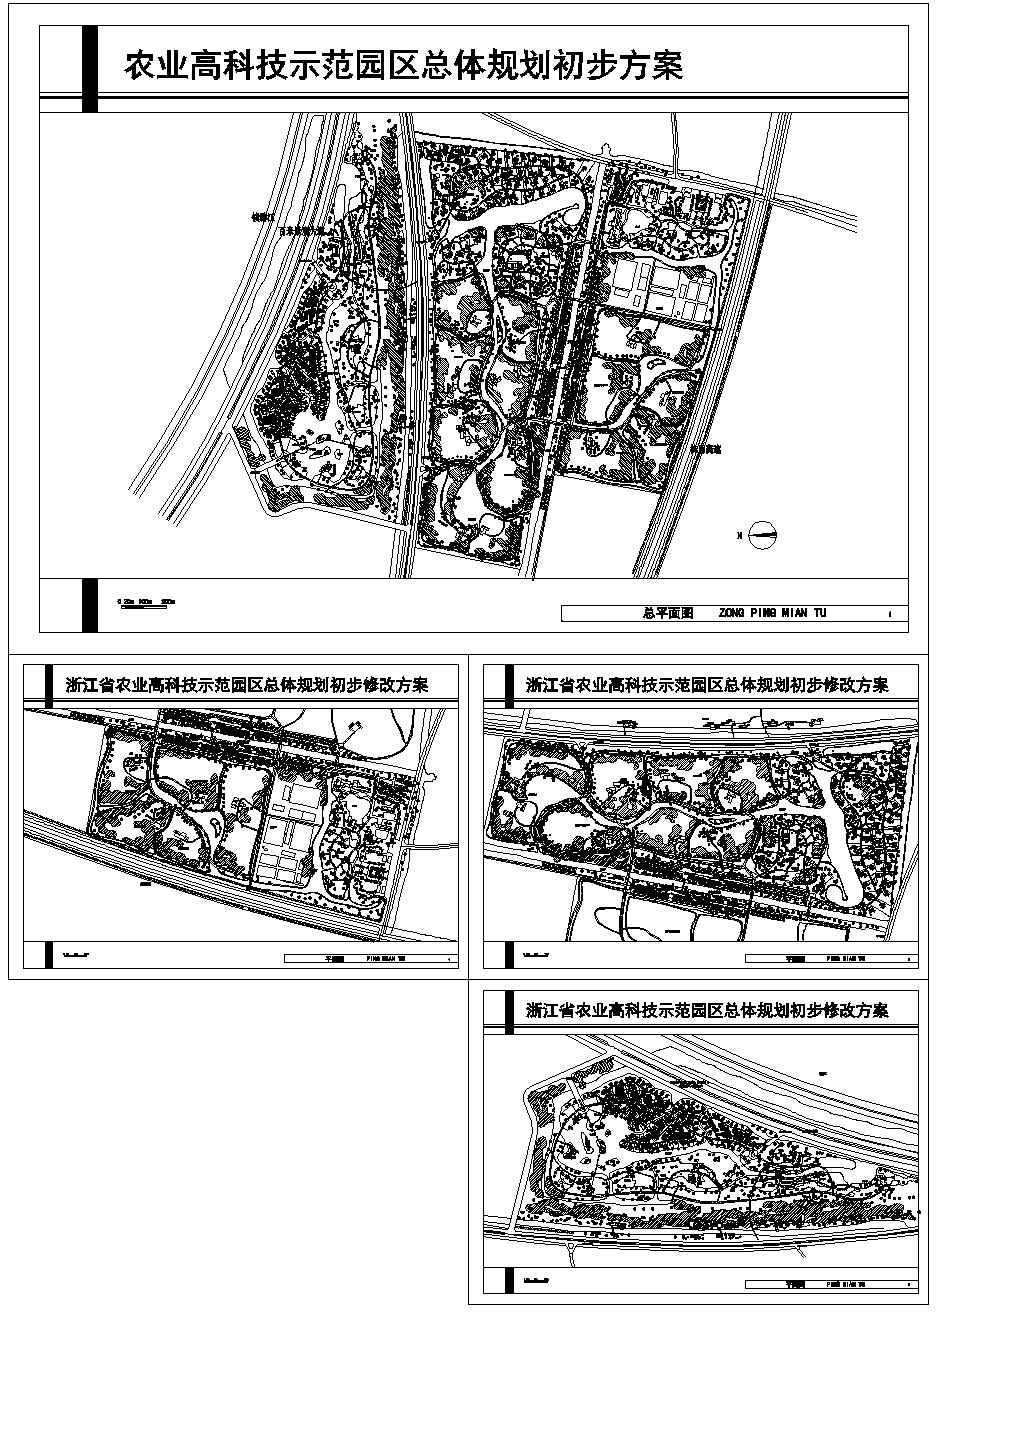 某现代标准农业高科技示范园区规划设计详细施工CAD图纸